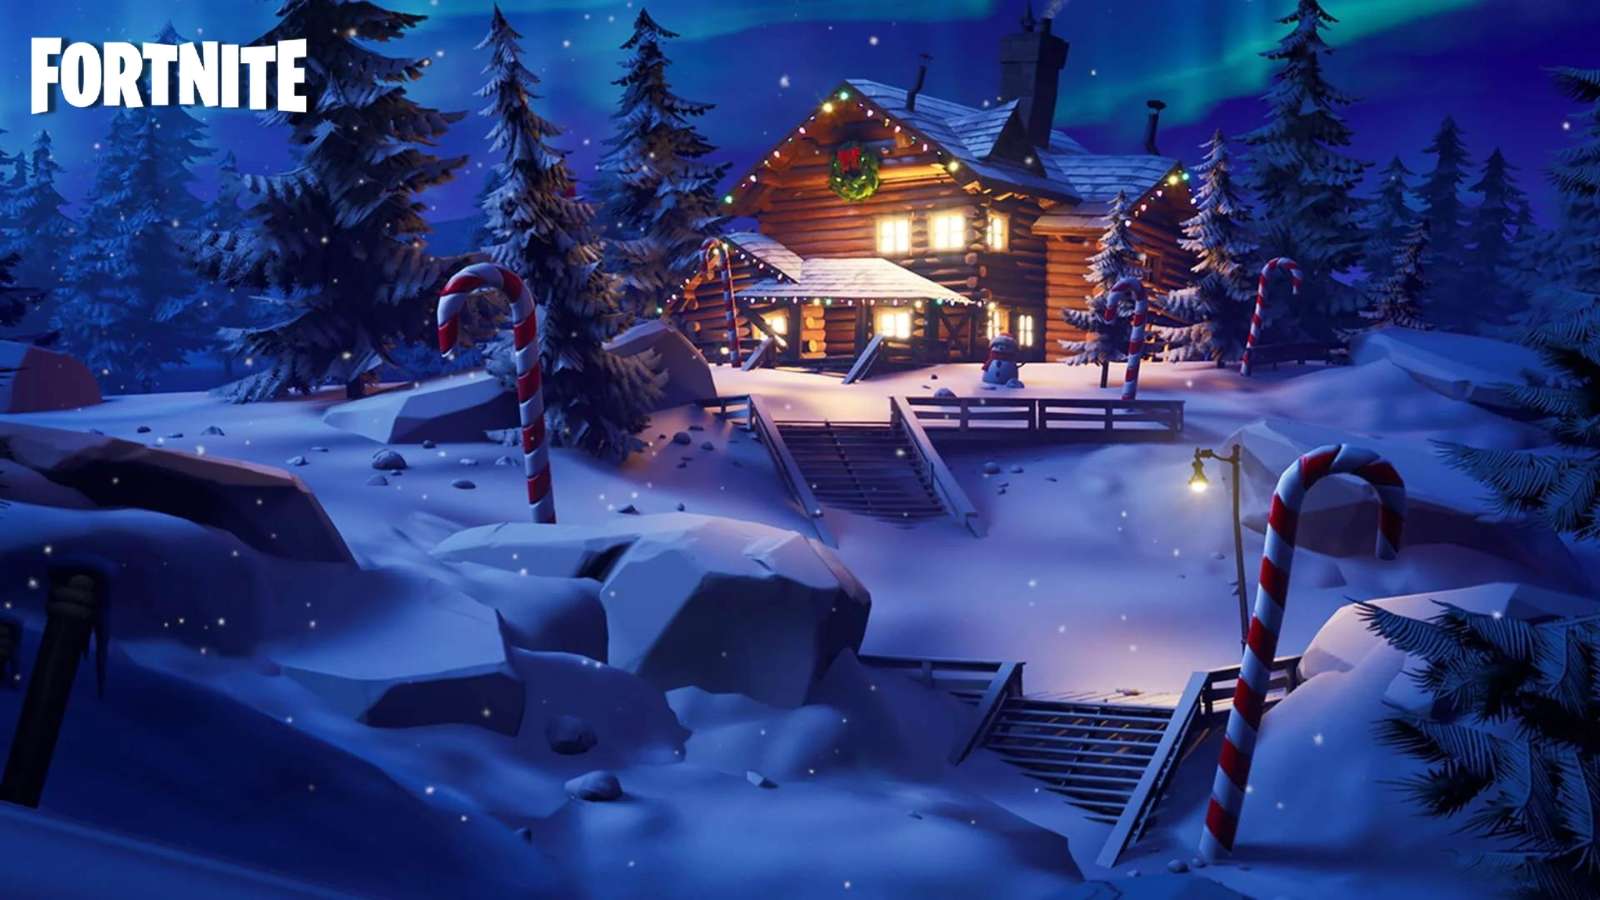 Winterfest Cabin in Fortnite